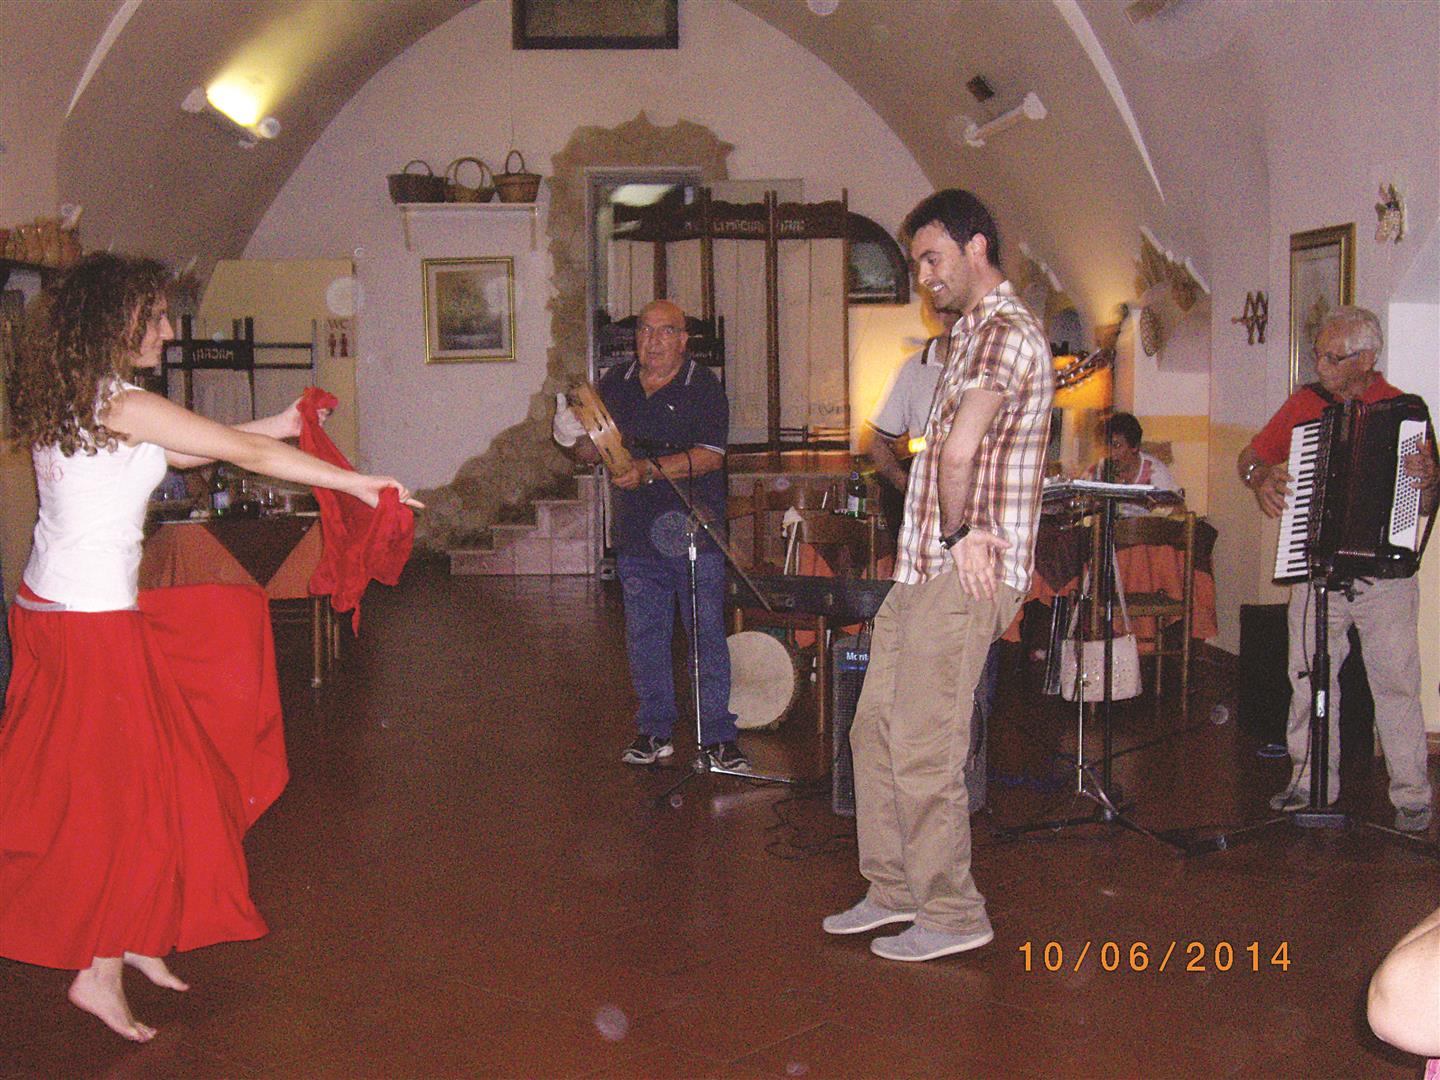 02_Γκρεκάνικη μουσική και χορός στο Σαλέντο